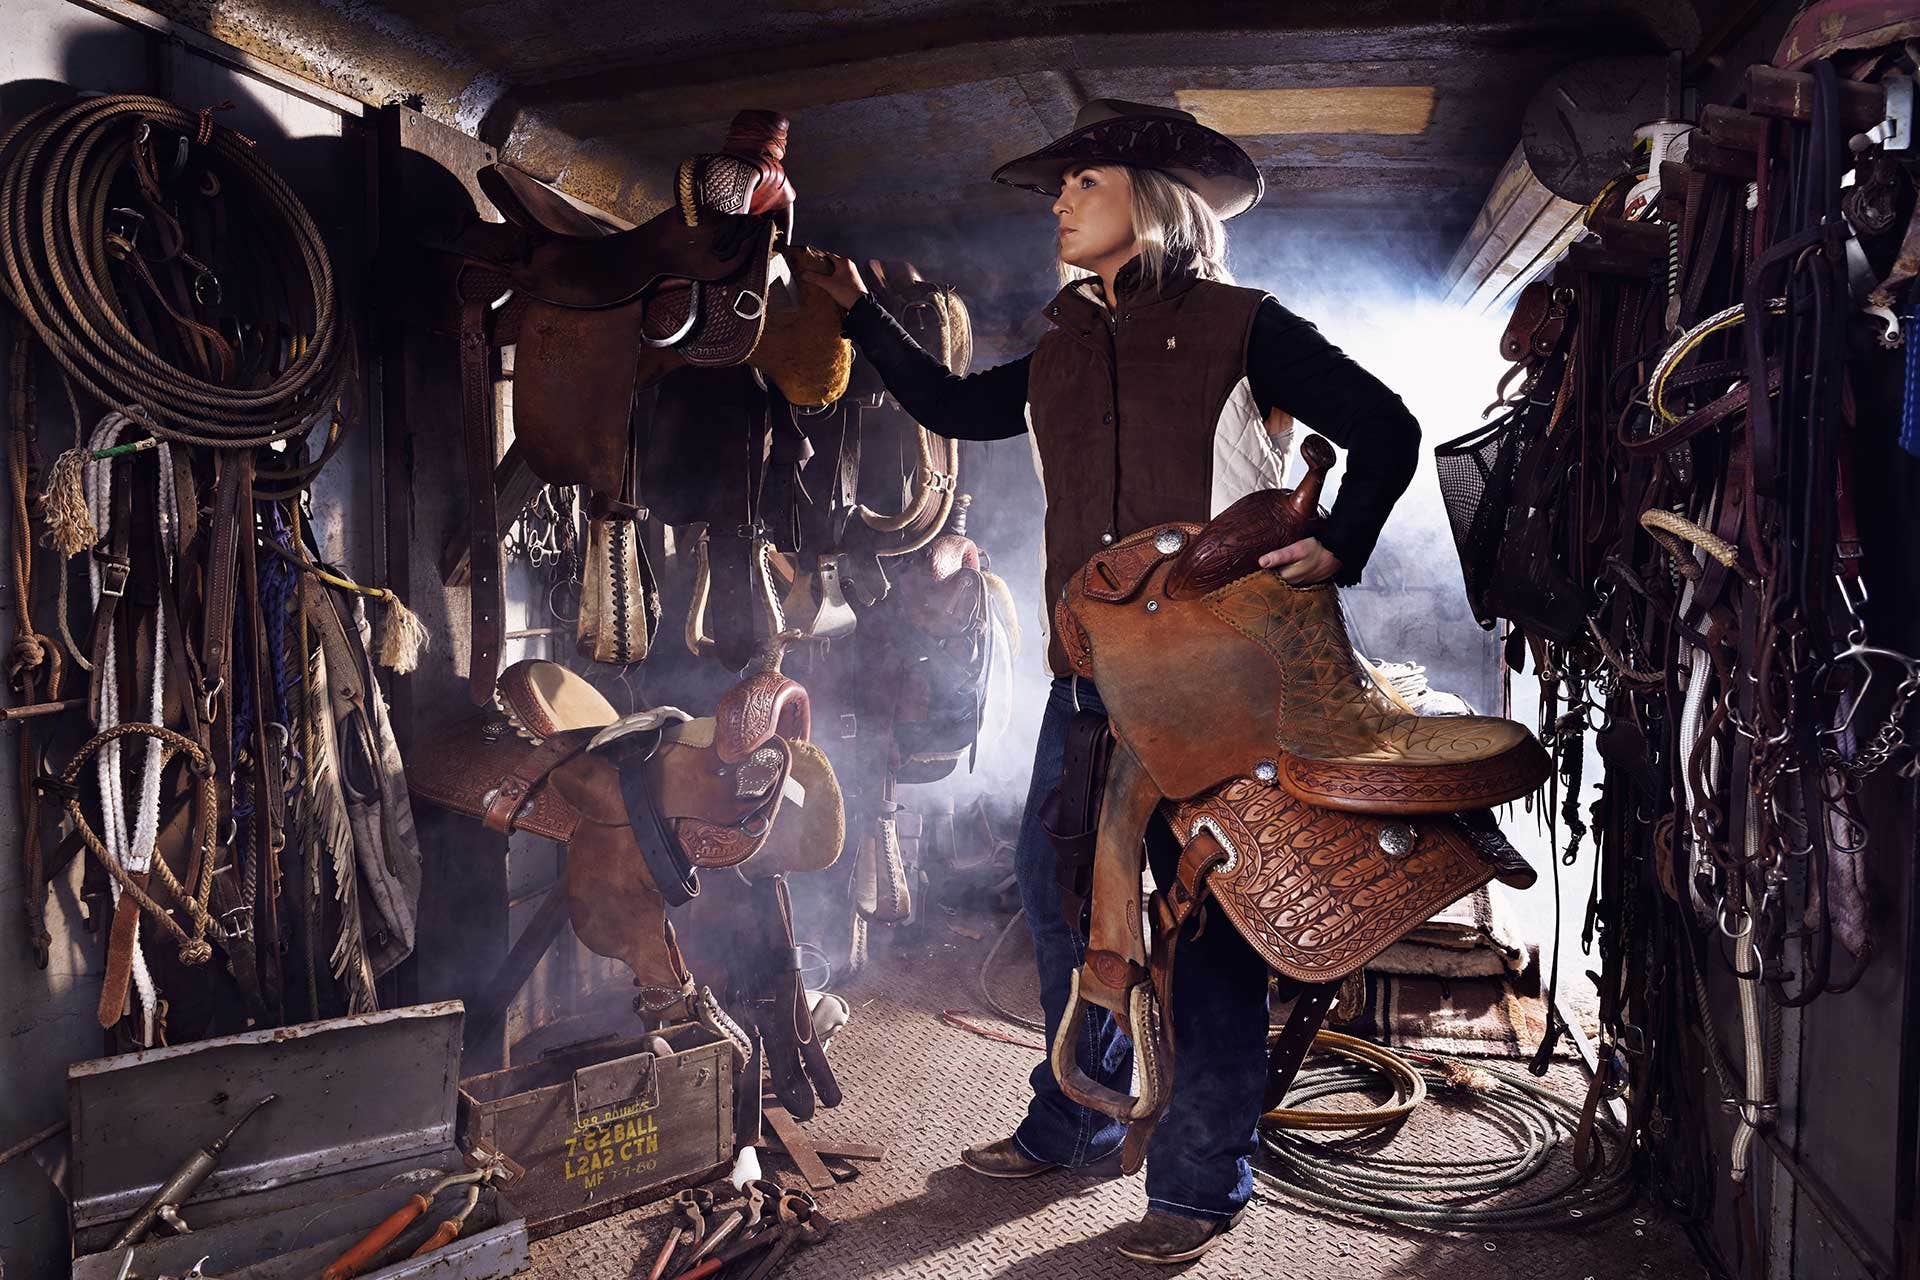 Rodeo Rider | Nikon Australia